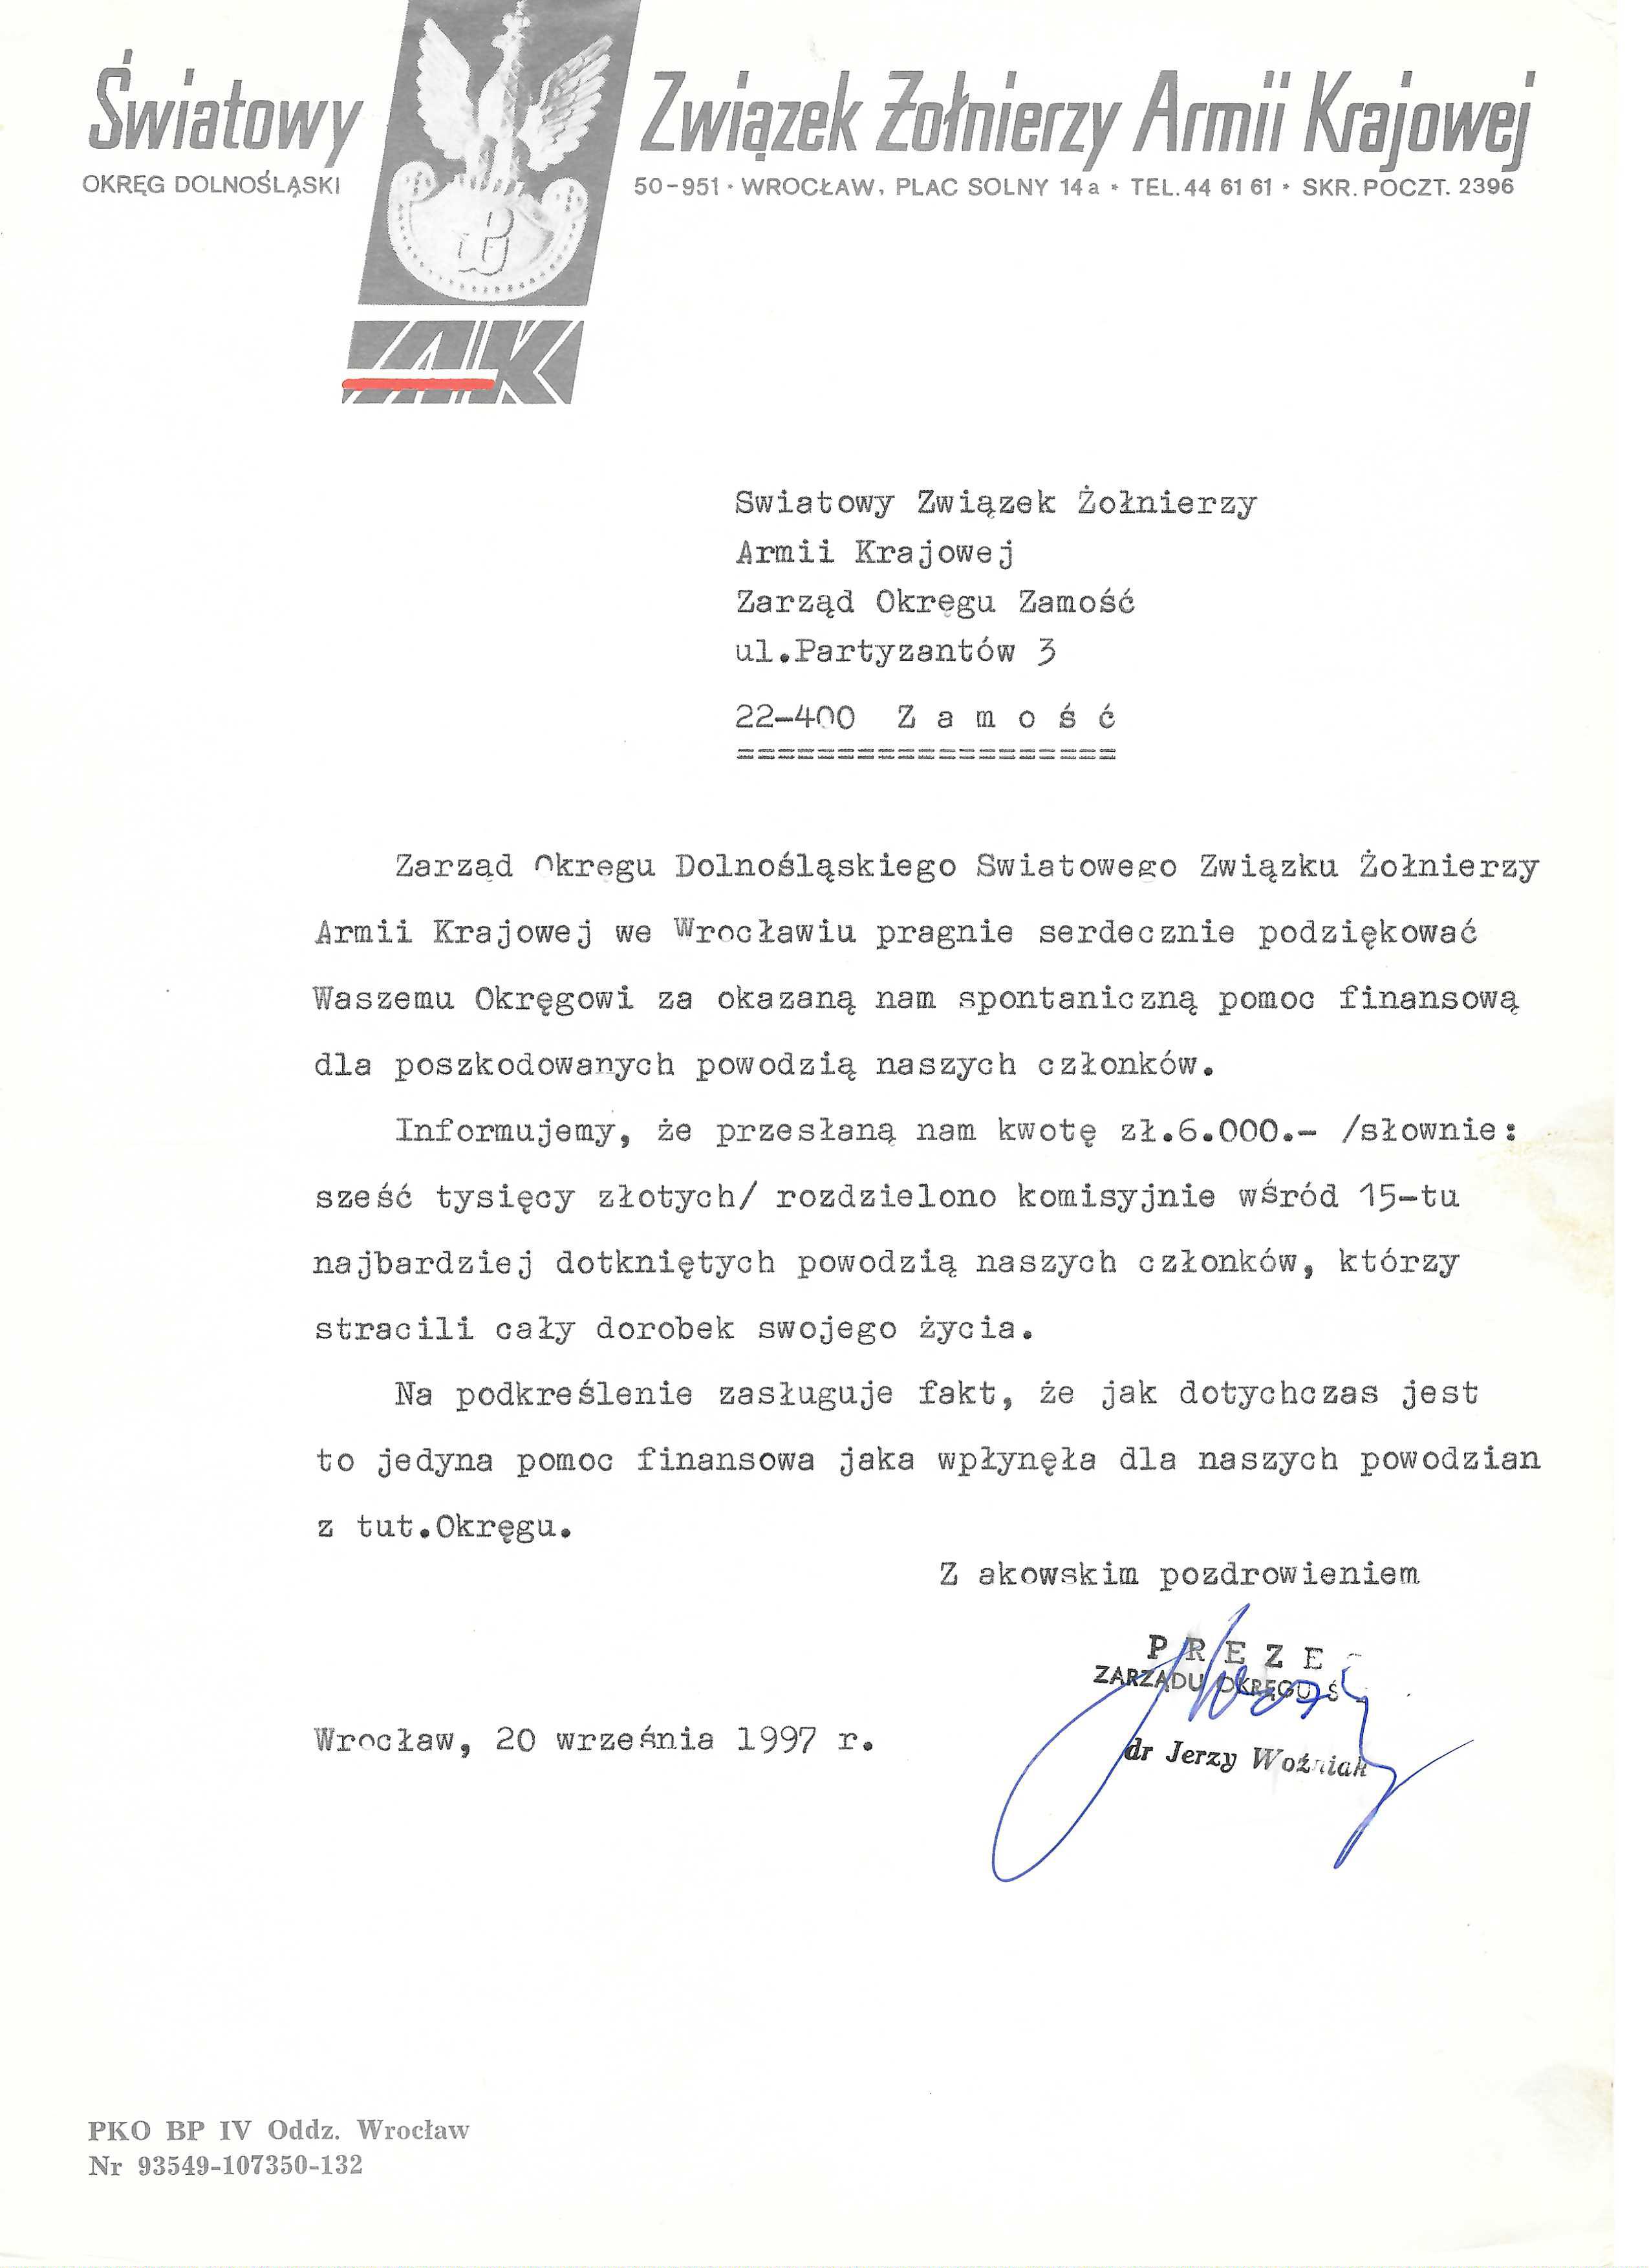 AK_Podziekowanie_Okreg-Dolnoslaski-1997